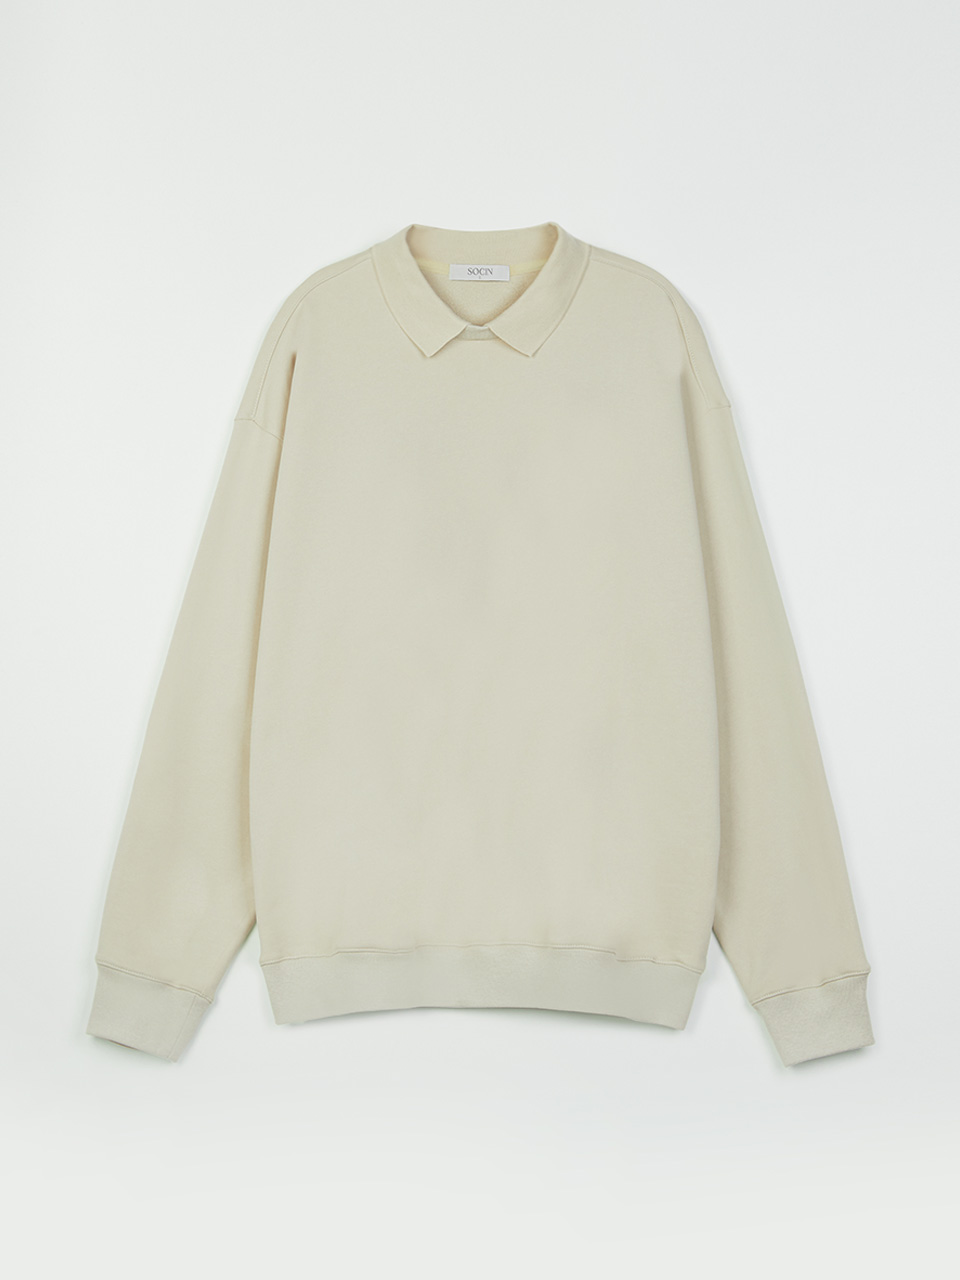 Soft Cotton Collar Sweatshirt (Beige)